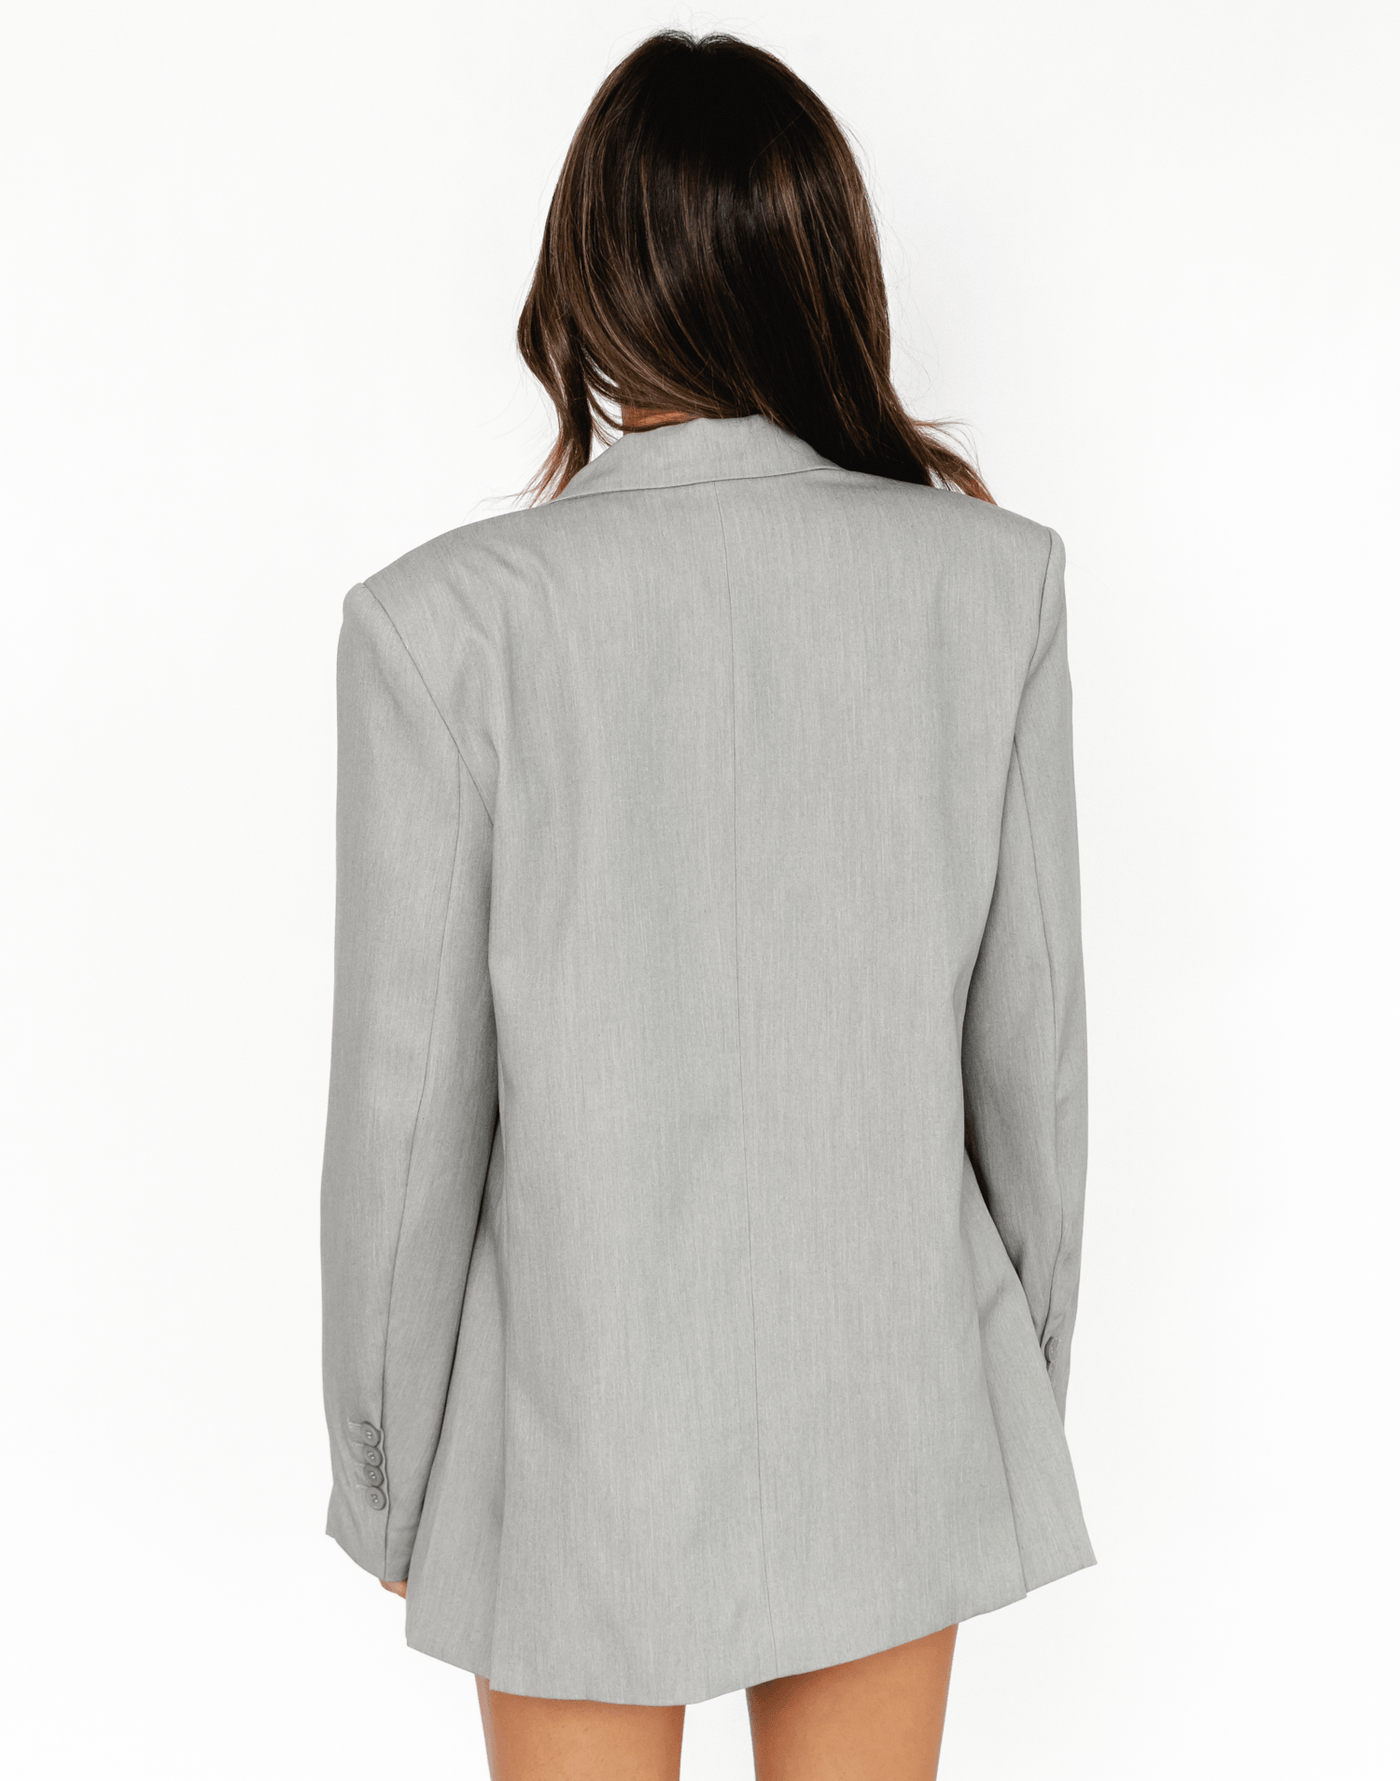 Patience Blazer (Grey) - Grey Blazer - Women's Outerwear - Charcoal Clothing